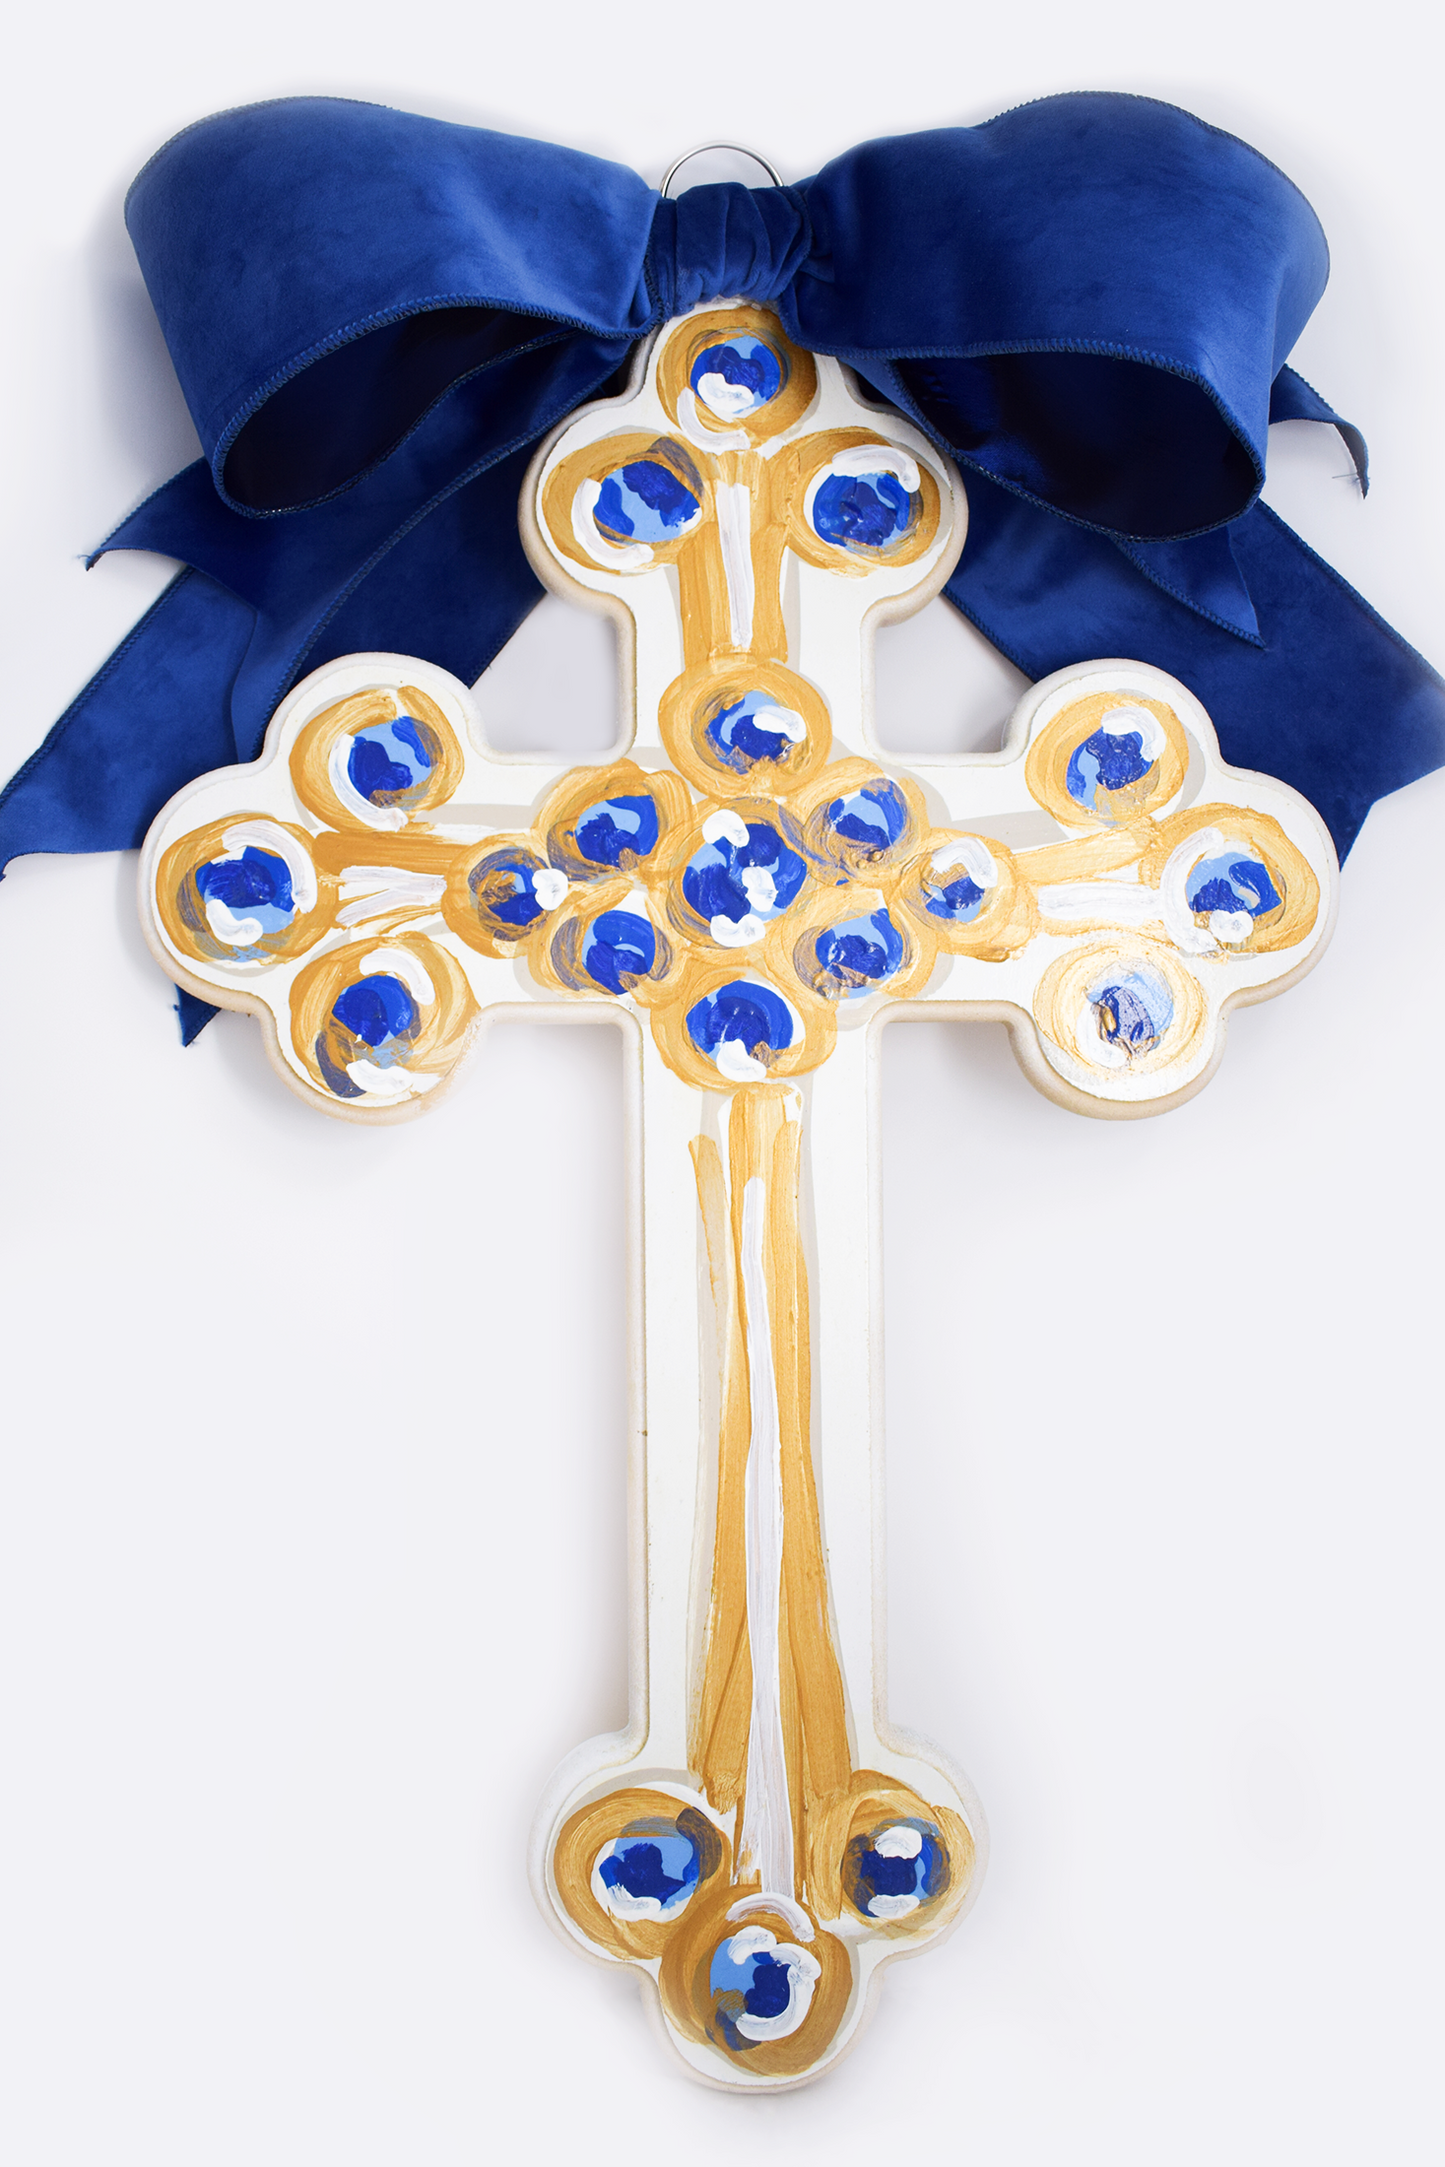 Hallelujah Cross (blue)